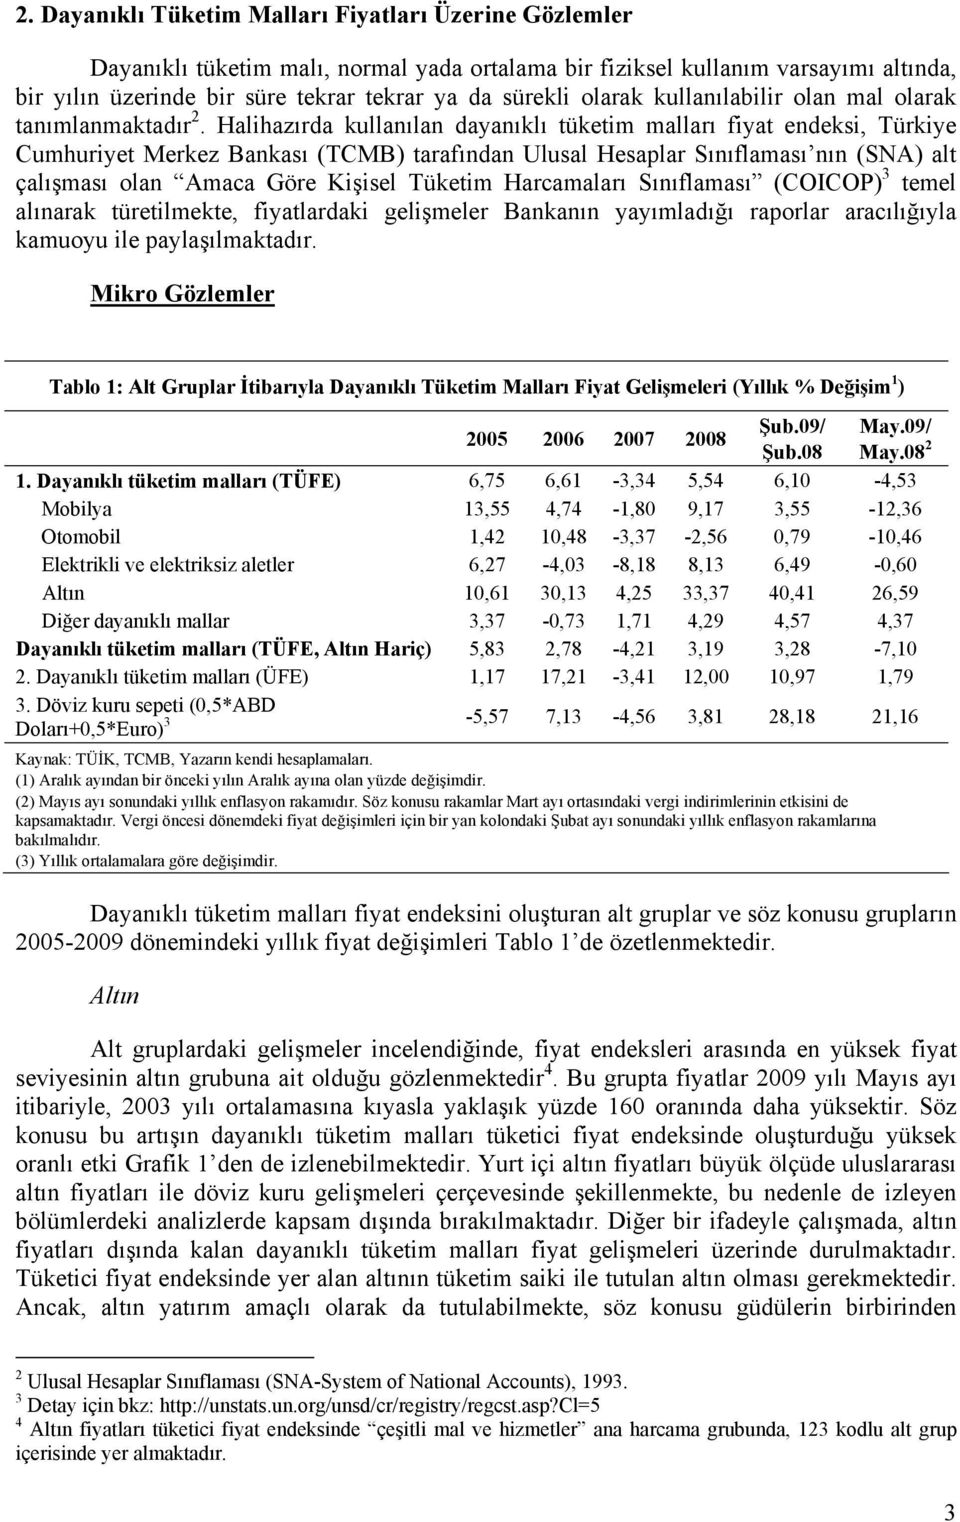 Halihazırda kullanılan dayanıklı tüketim malları fiyat endeksi, Türkiye Cumhuriyet Merkez Bankası (TCMB) tarafından Ulusal Hesaplar Sınıflaması nın (SNA) alt çalışması olan Amaca Göre Kişisel Tüketim